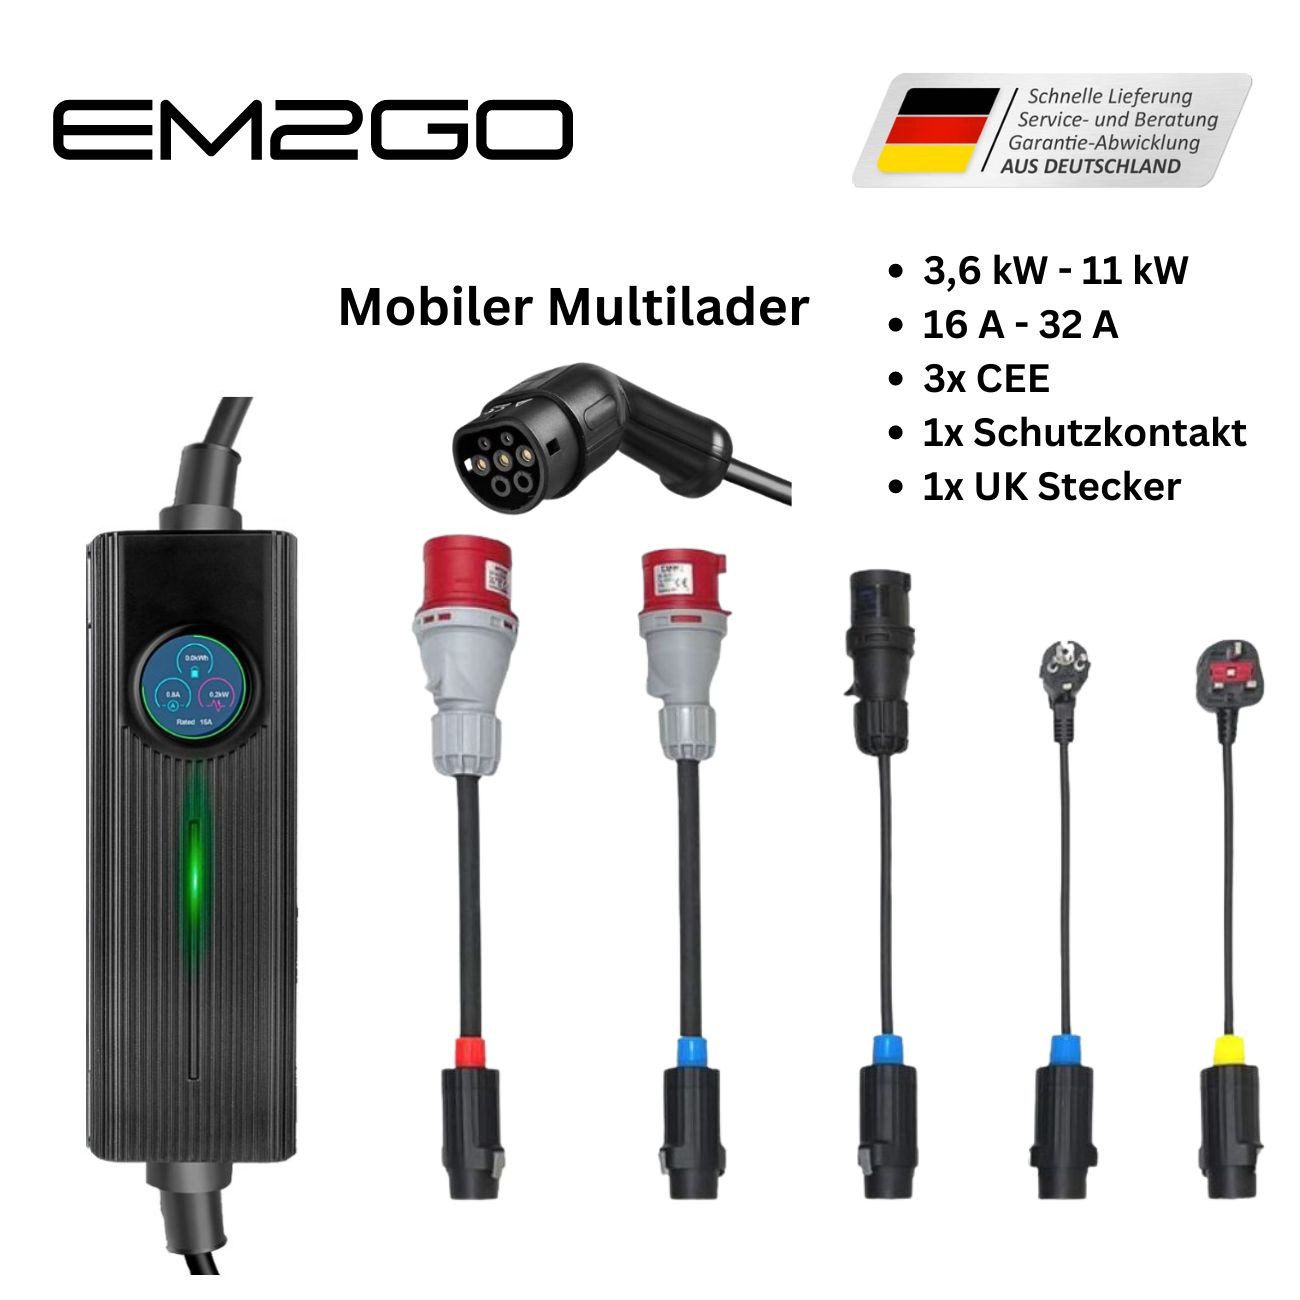 EM2GO Mobil, Mobile Elektroauto-Ladestation Mobile Wallbox mit 5 Adapter, Wandhalterung und Tasche